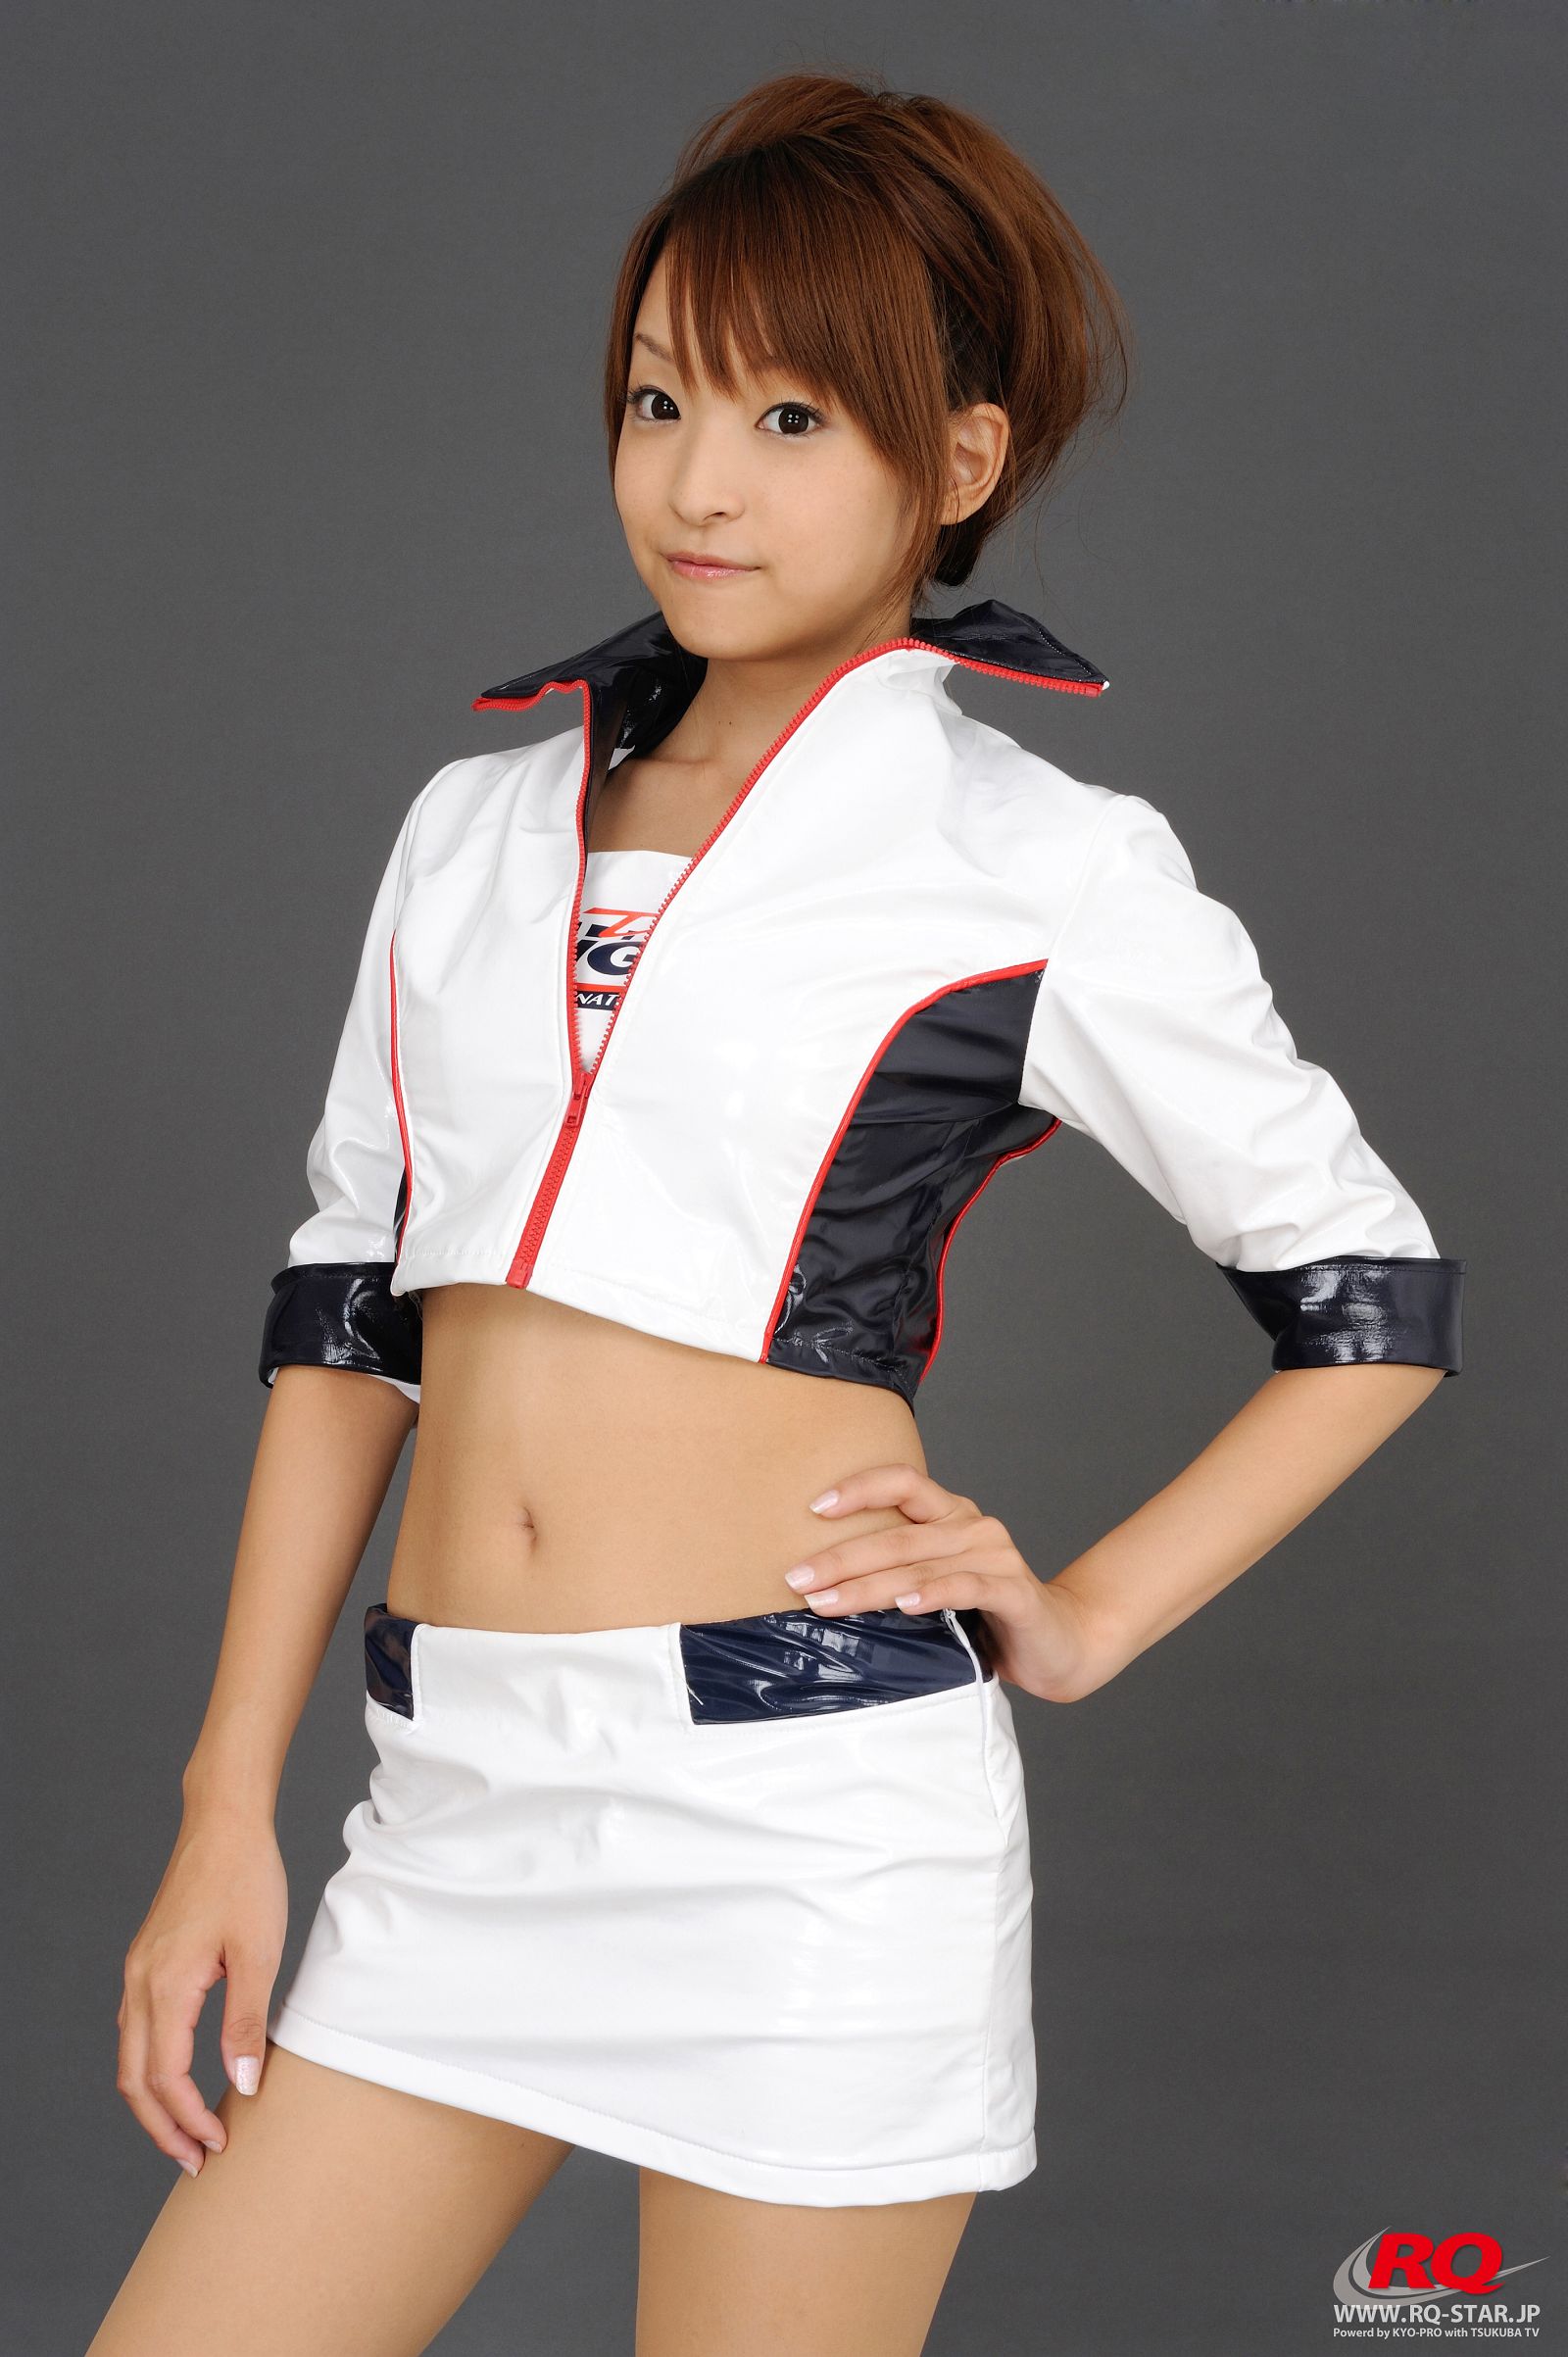 [RQ-STAR美女] NO.0080 Mio Aoki 青木未央 Race Queen - 2008 5Zigen0